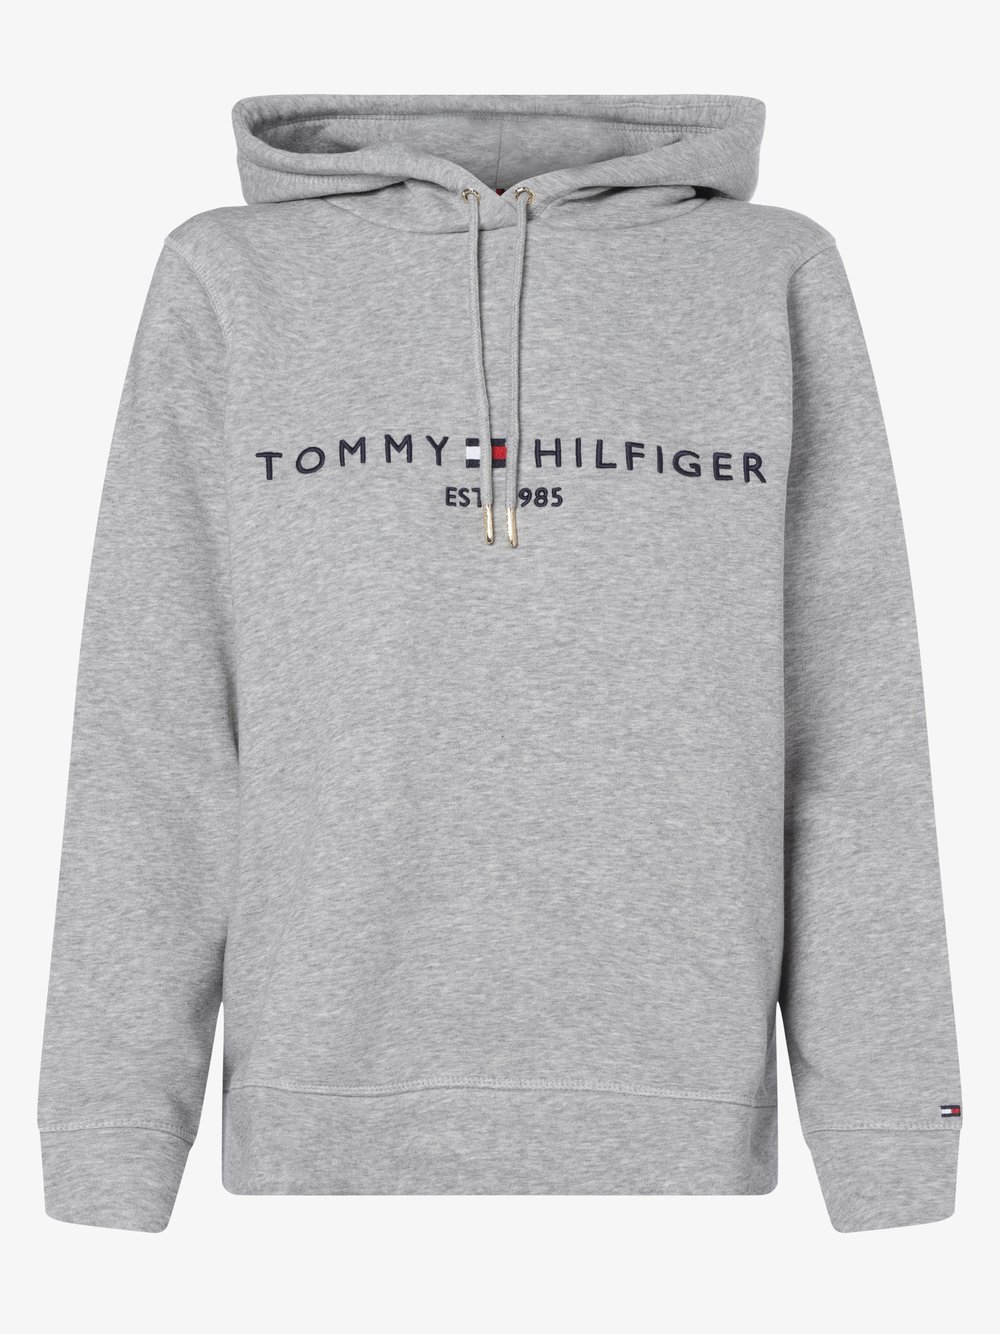 Tommy Hilfiger - Damska bluza z kapturem, szary Tommy Hilfiger